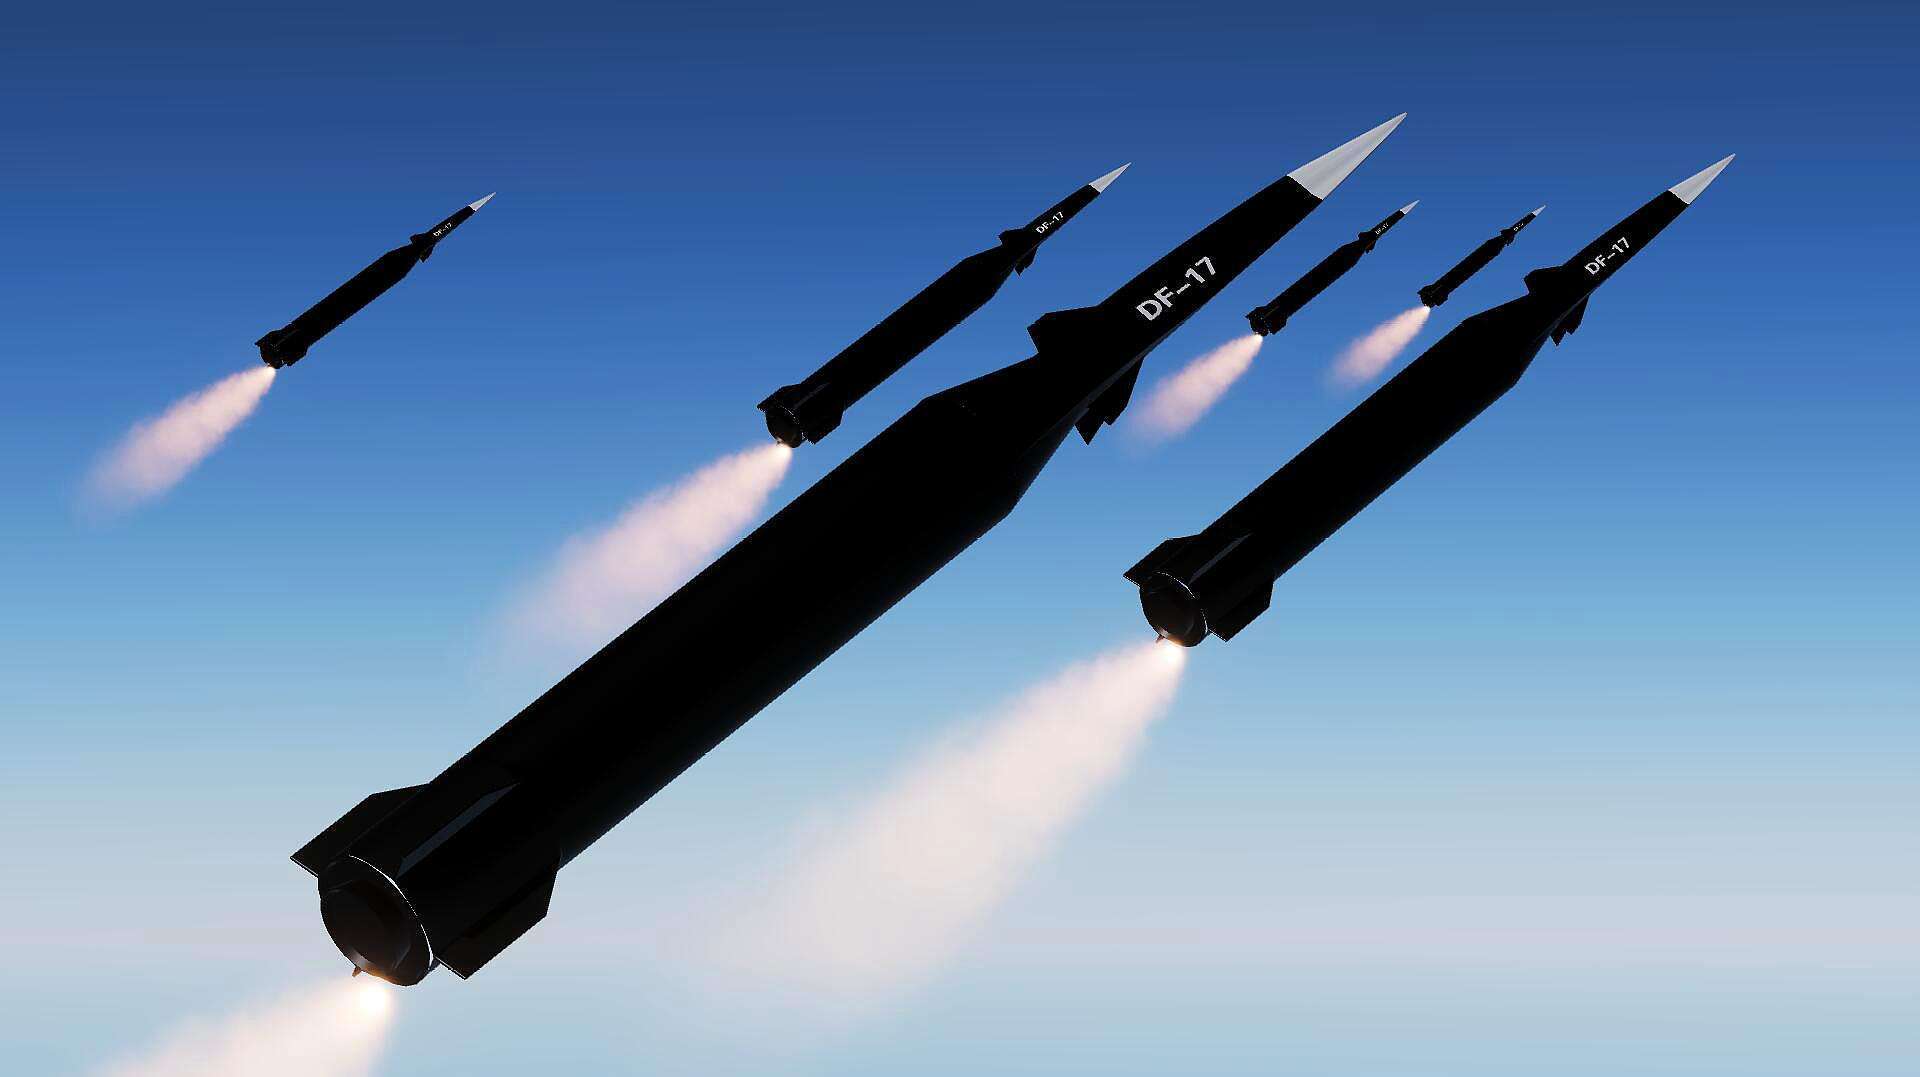 世界各国各型导弹大小对比|导弹|大小_新浪新闻